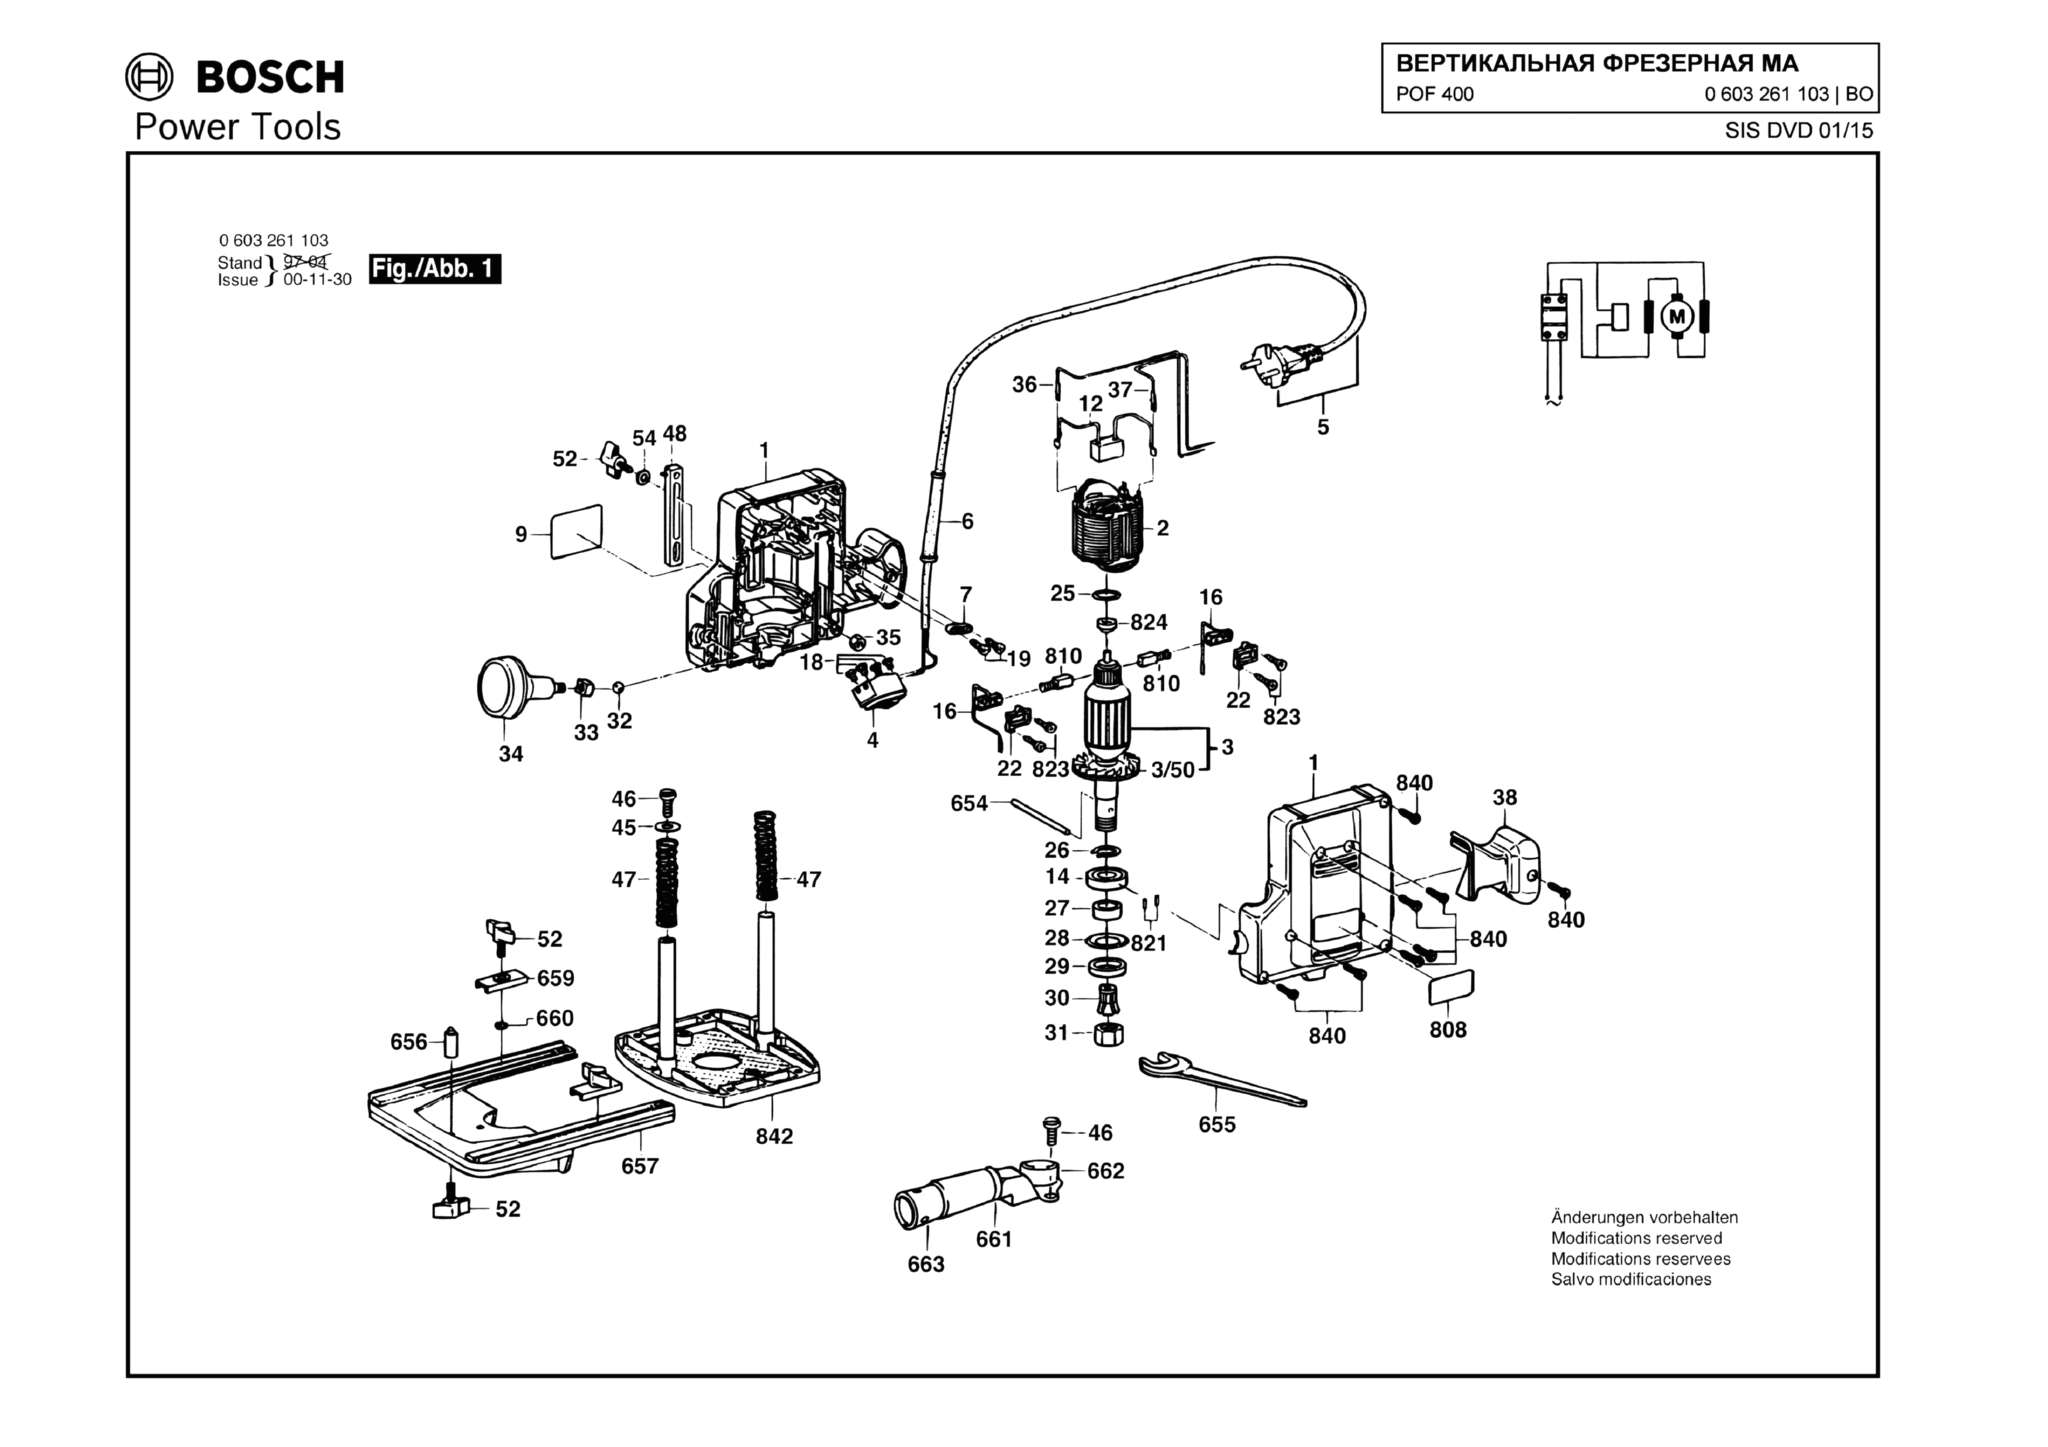 Запчасти, схема и деталировка Bosch POF 400 (ТИП 0603261103)